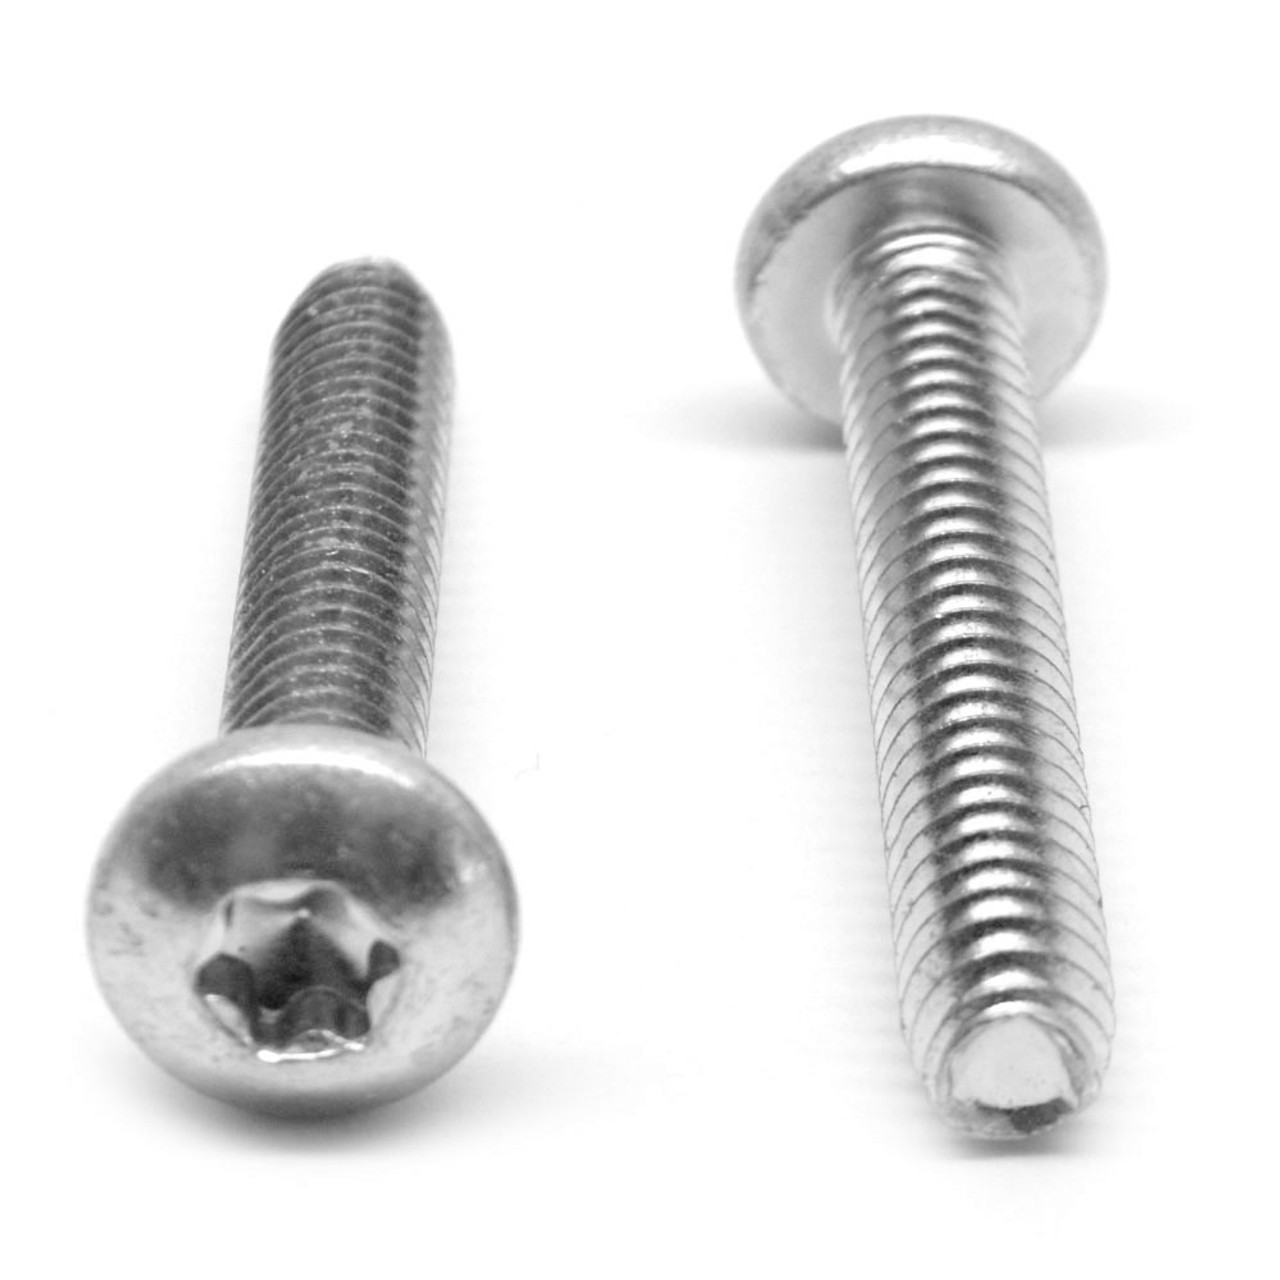 M5 x 0.80 x 10 MM Coarse Thread Thread Rolling Screw 6 Lobe Pan Head Stainless Steel 18-8 Wax